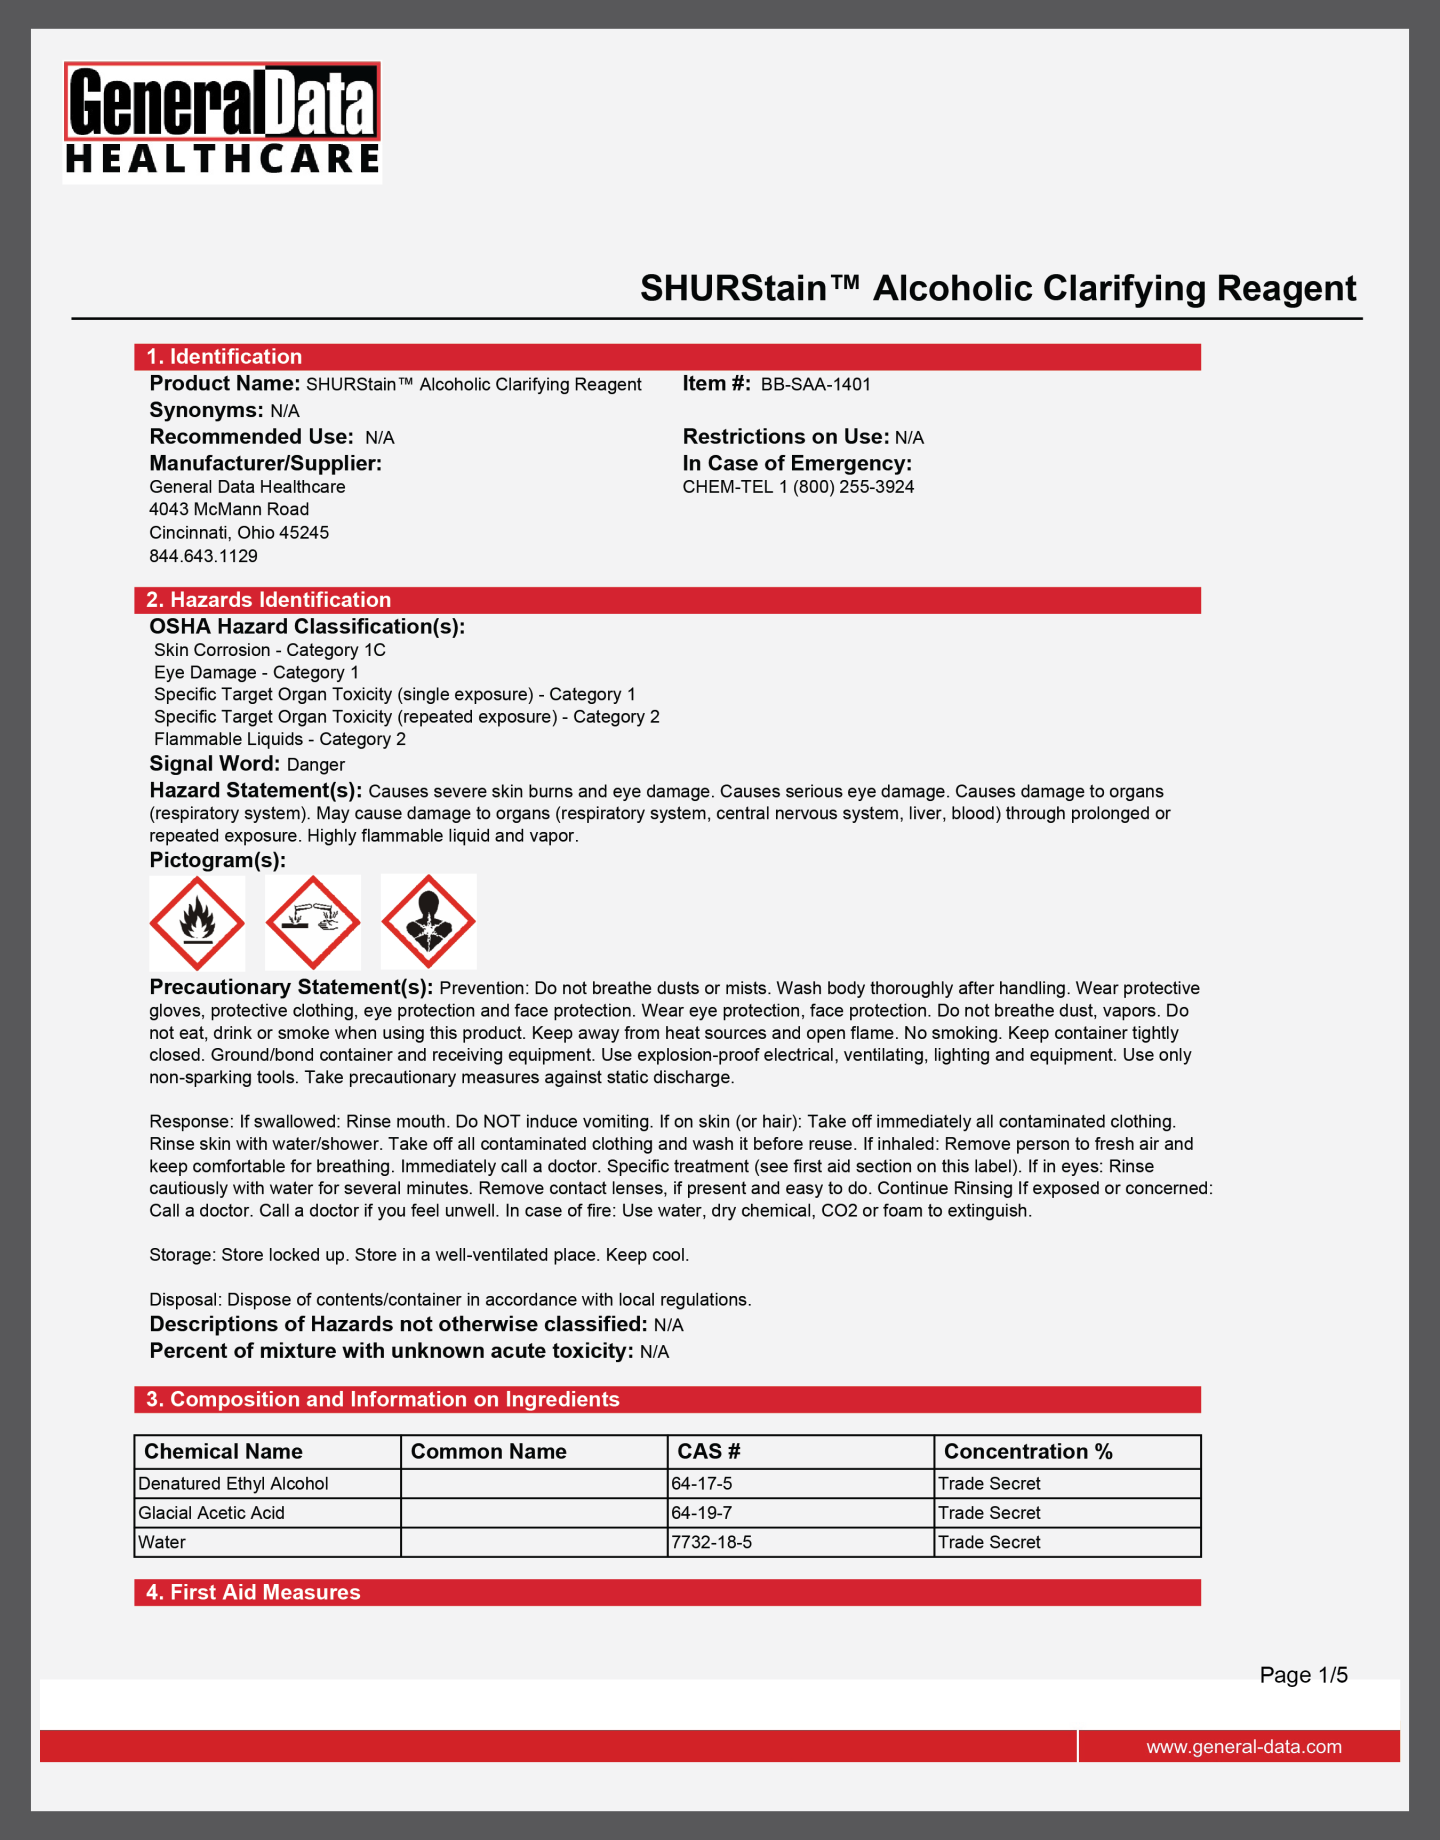 SHURStain Alcoholic Clarifying Reagent Safety Data Sheet